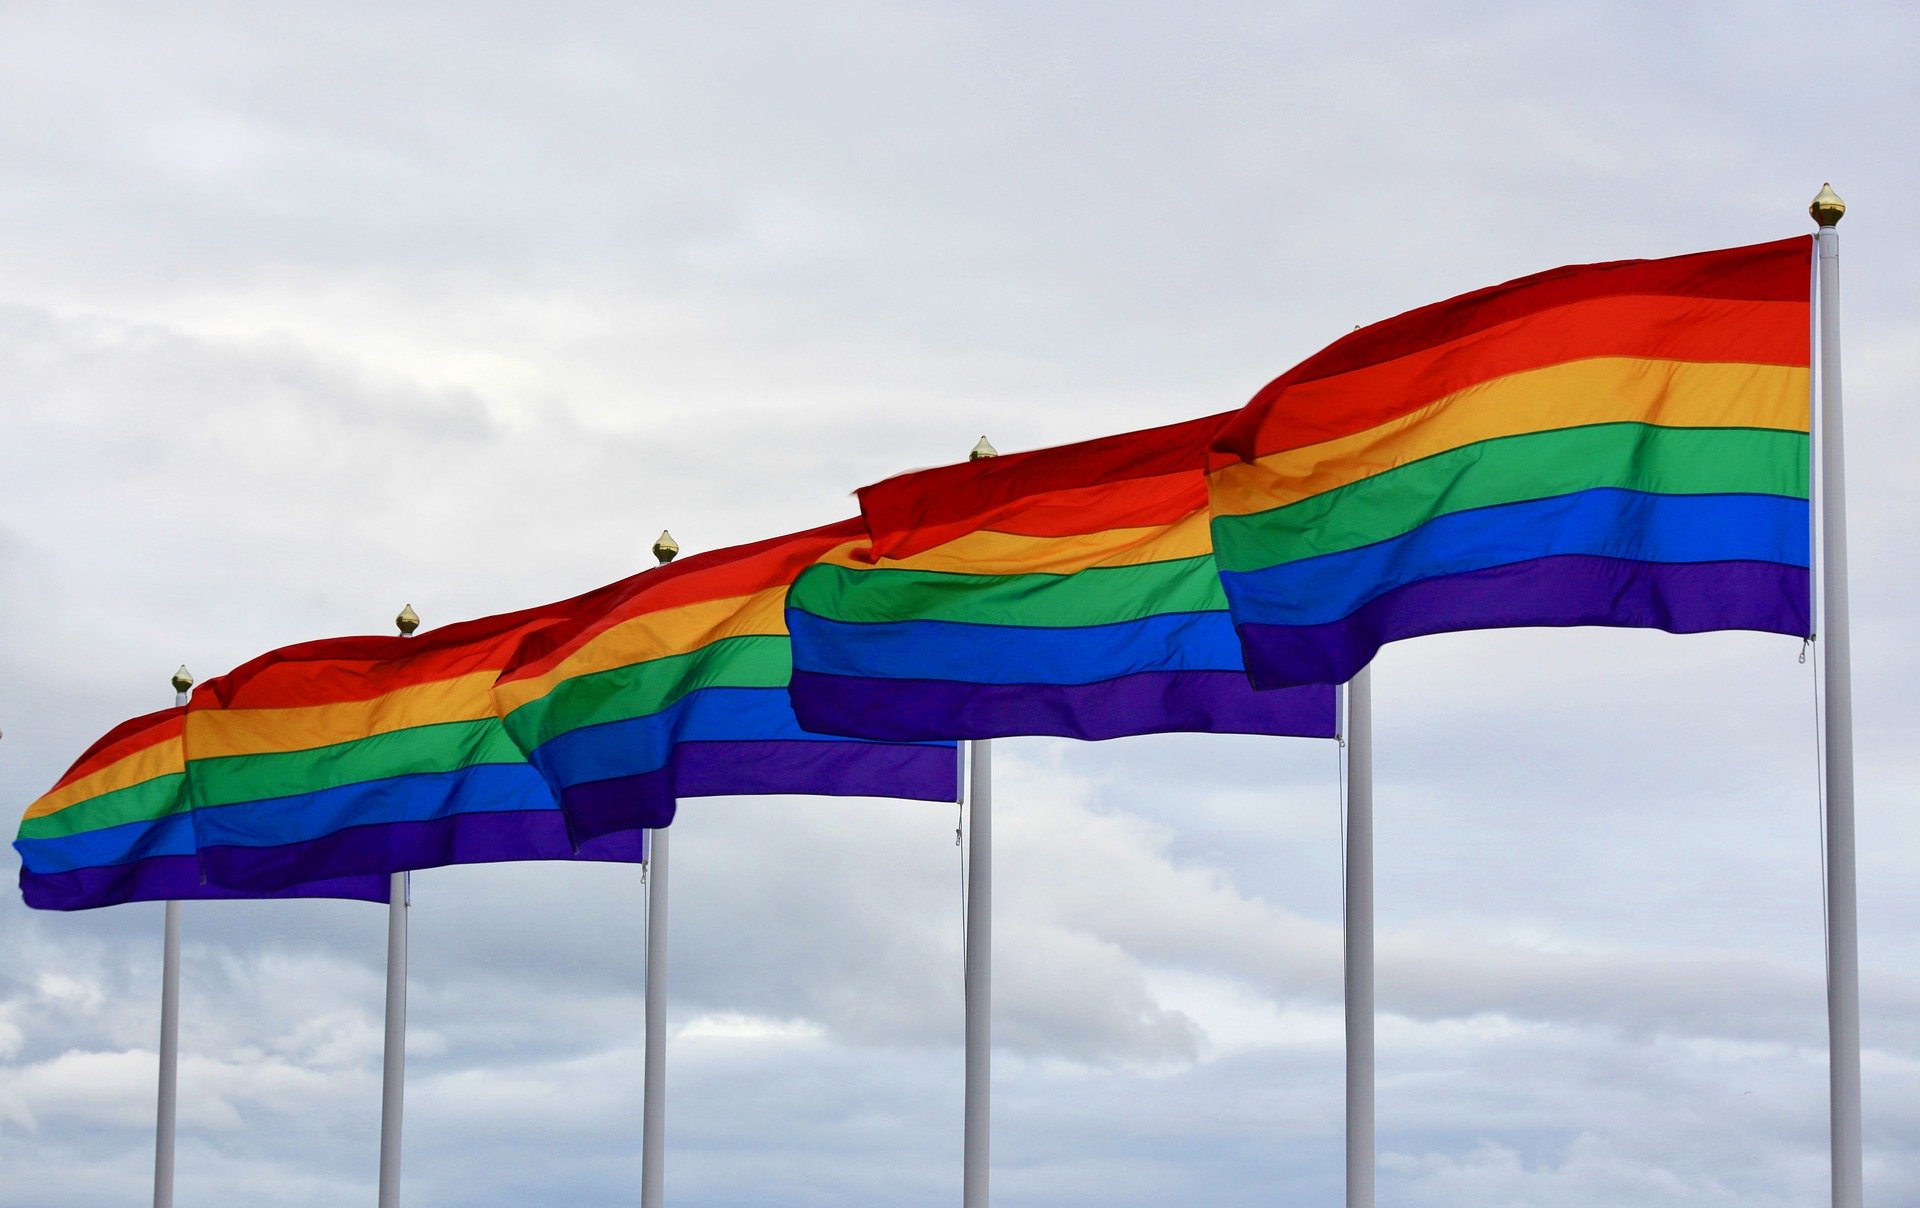 Ursula von der Leyen: Legea care interzice promovarea homosexualității în Ungaria este o rușine